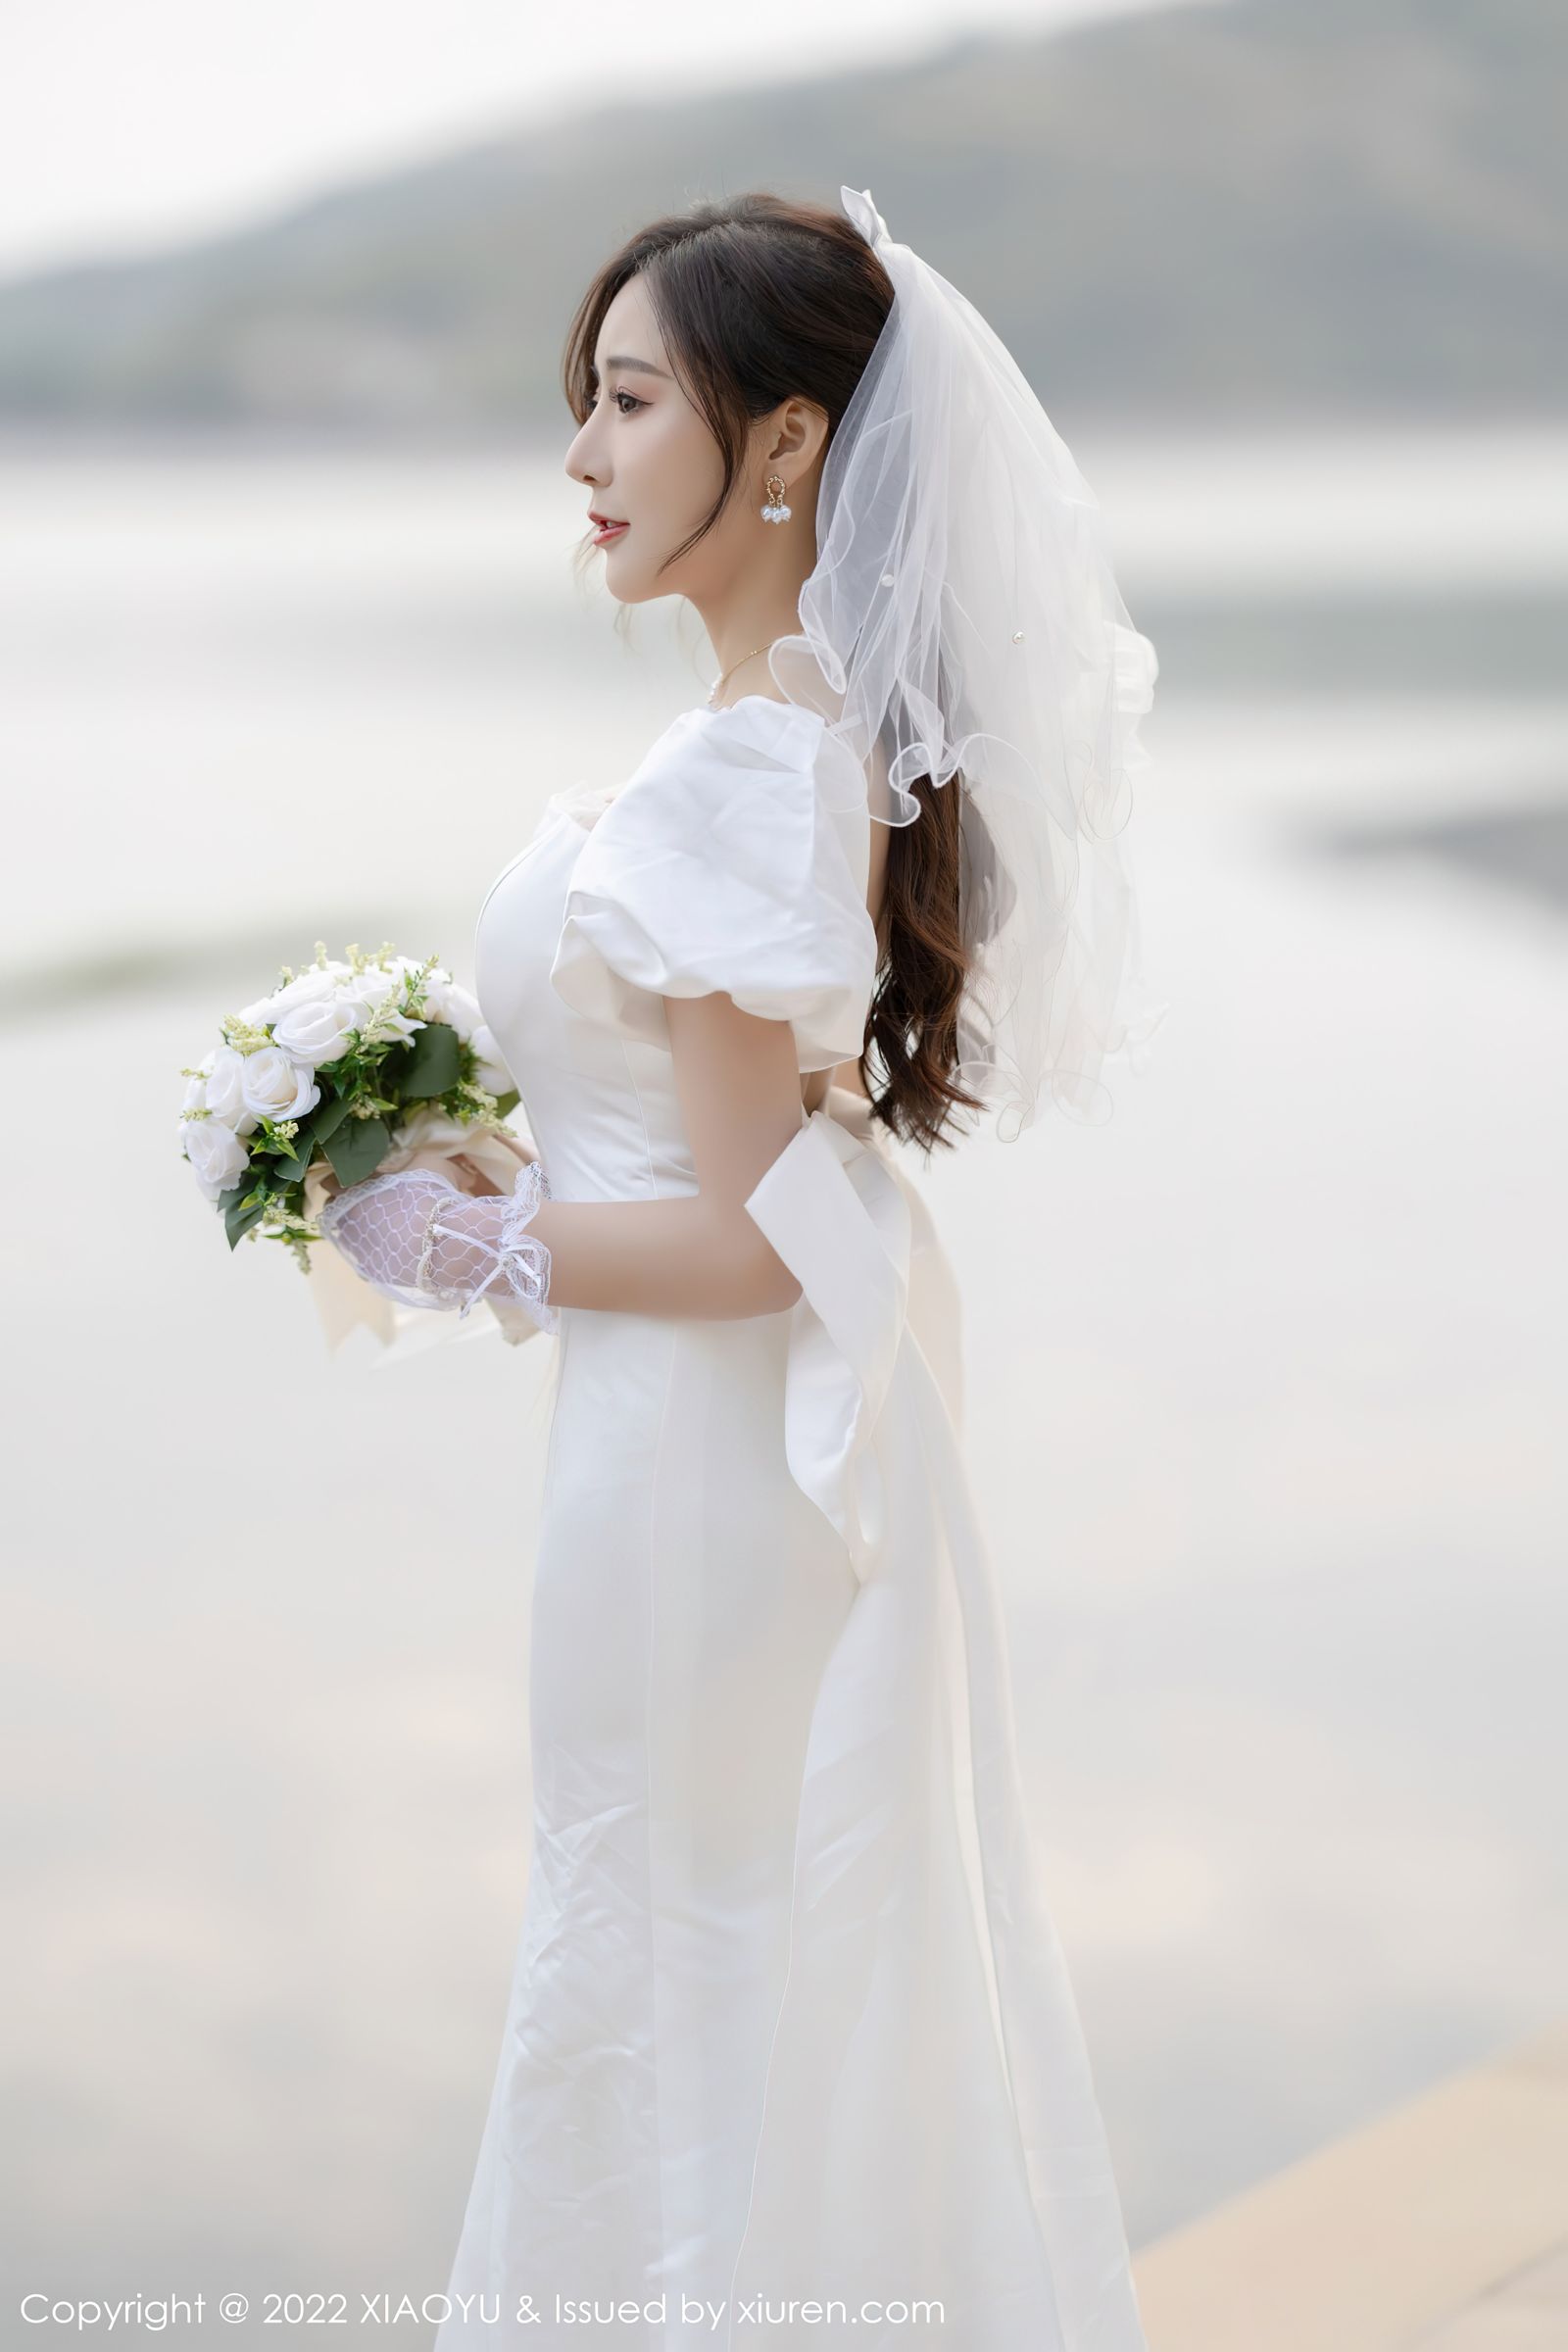 [XIAOYU语画界]-Vol.733-王馨瑶yanni-白色婚纱礼裙搭配白色丝袜-套图之家